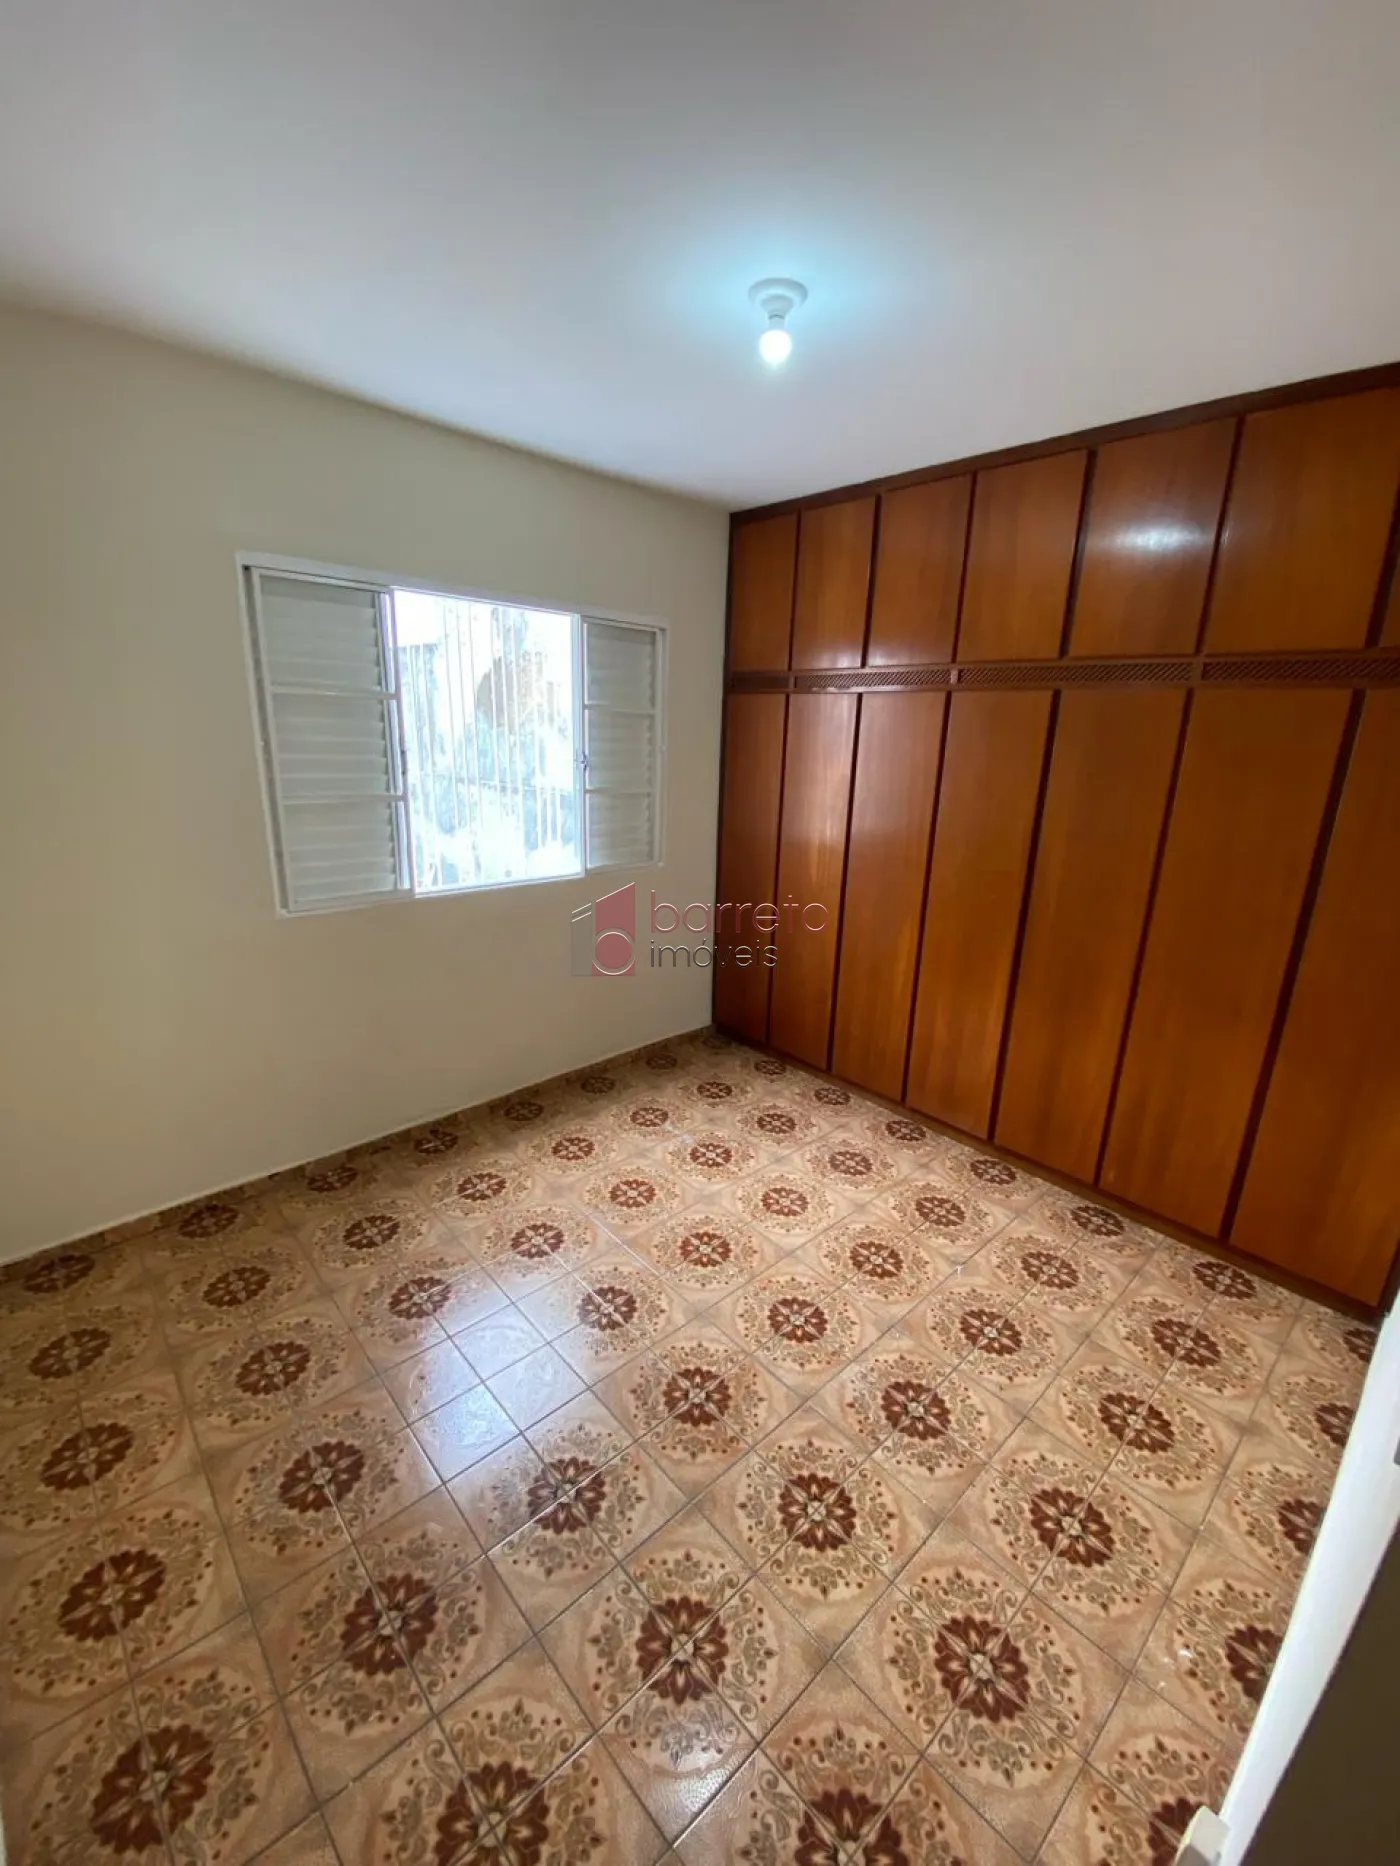 Comprar Casa / Térrea em Jundiaí R$ 645.000,00 - Foto 10